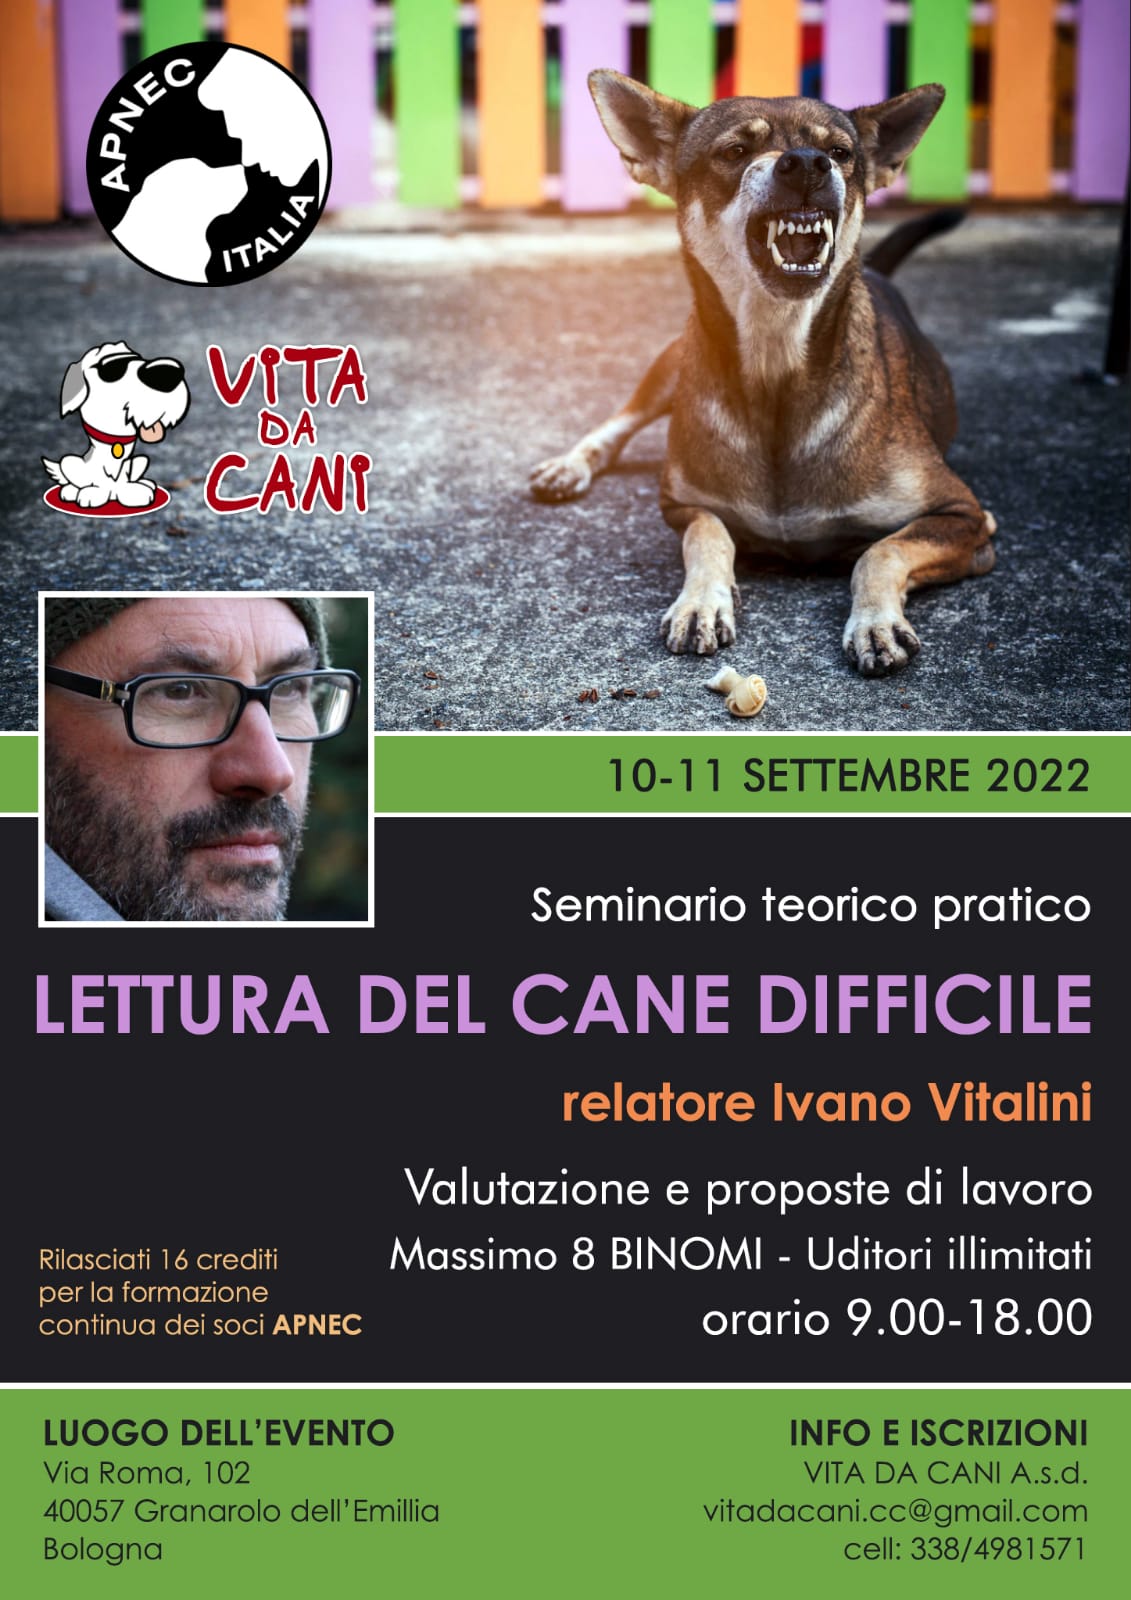 Granarolo dell'Emilia 10-11 Settembre 2022 - Lettura del cane difficile con Ivano Vitalini